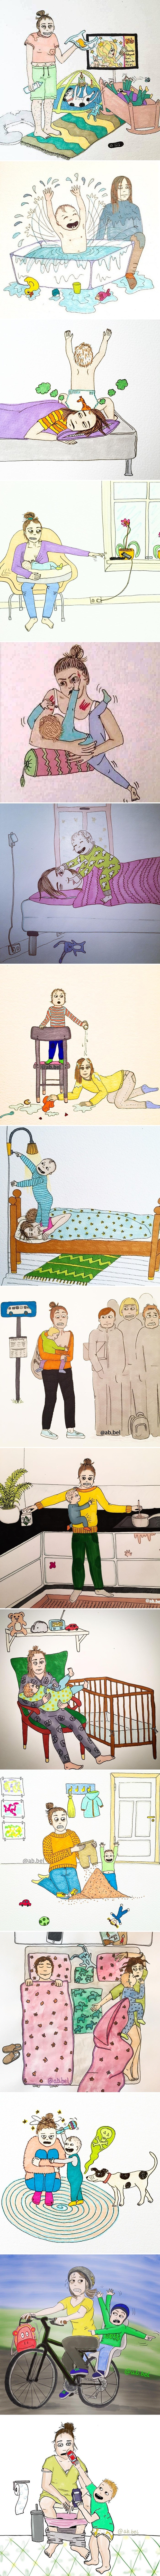 Iskrene ilustracije koje na smiješan način dokazuju da nije lako biti mama